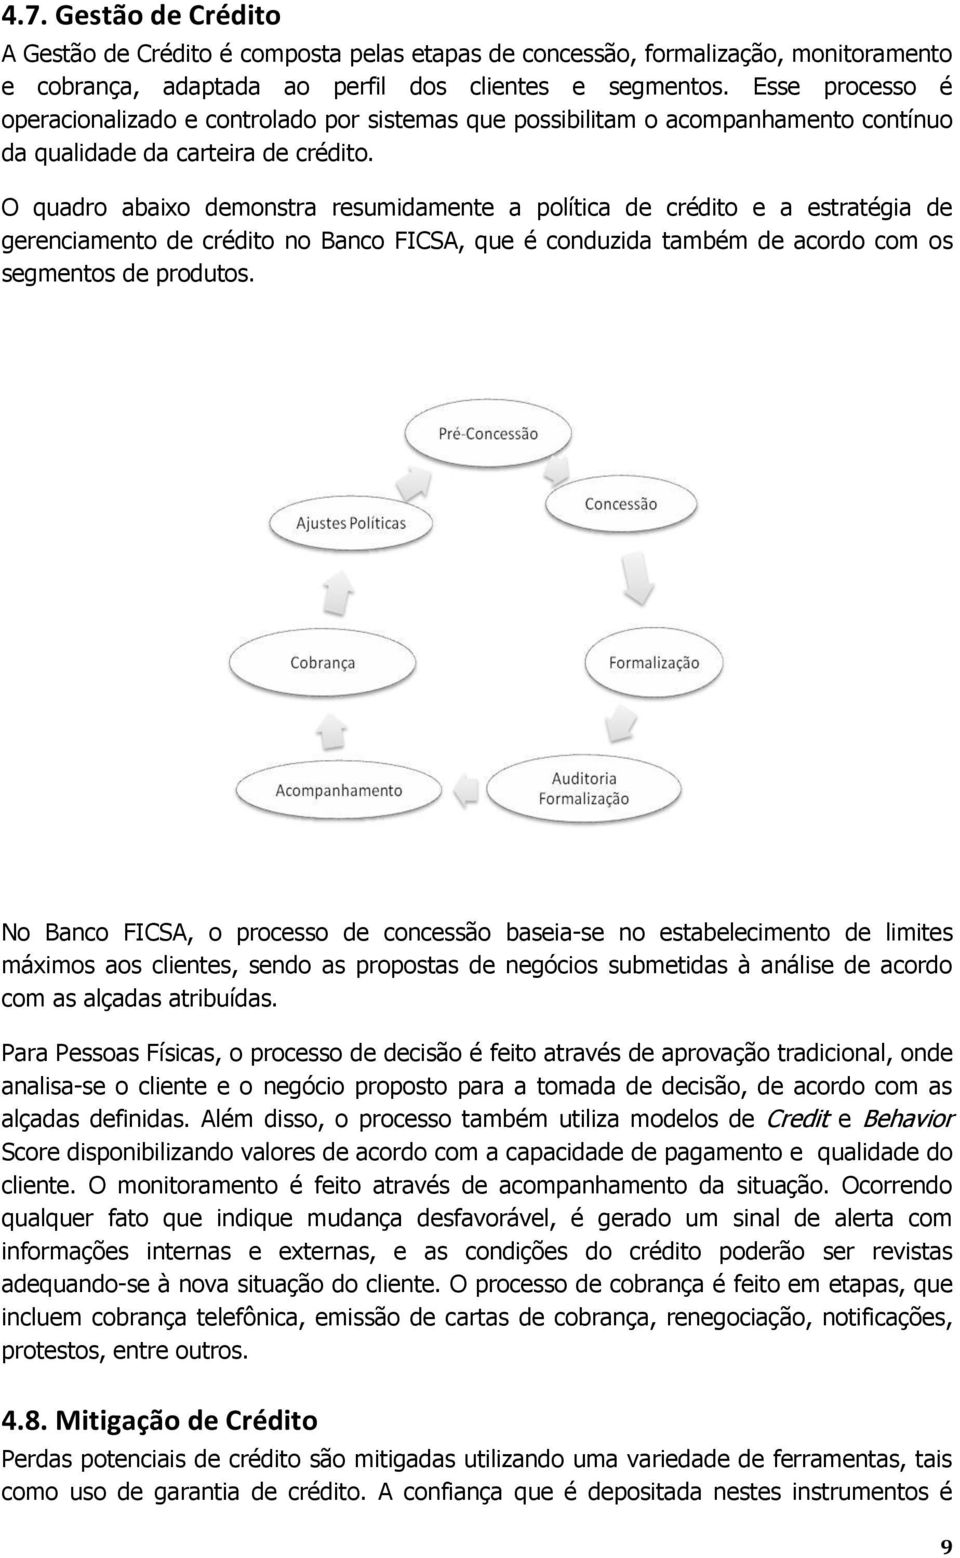 O quadro abaixo demonstra resumidamente a política de crédito e a estratégia de gerenciamento de crédito no Banco FICSA, que é conduzida também de acordo com os segmentos de produtos.